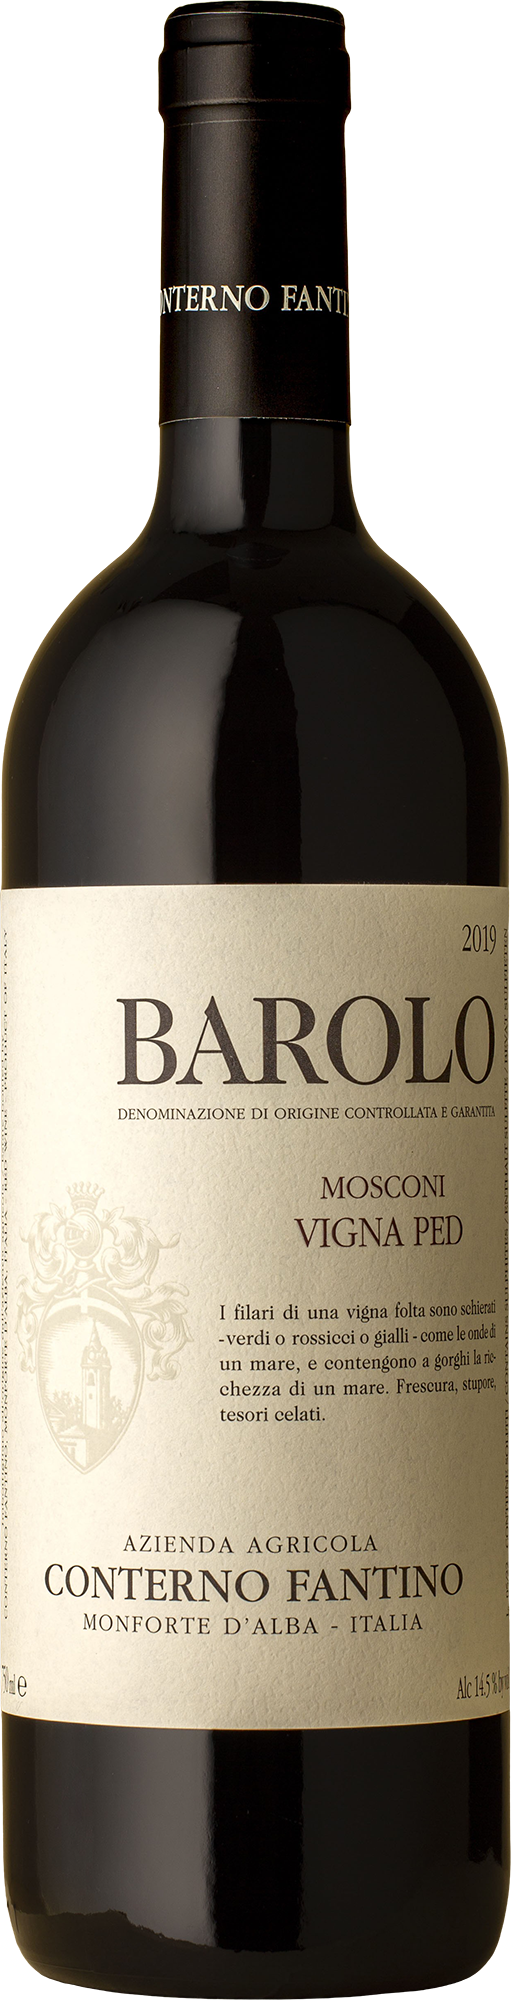 Conterno Fantino - Barolo Mosconi Nebbiolo 2019 Red Wine